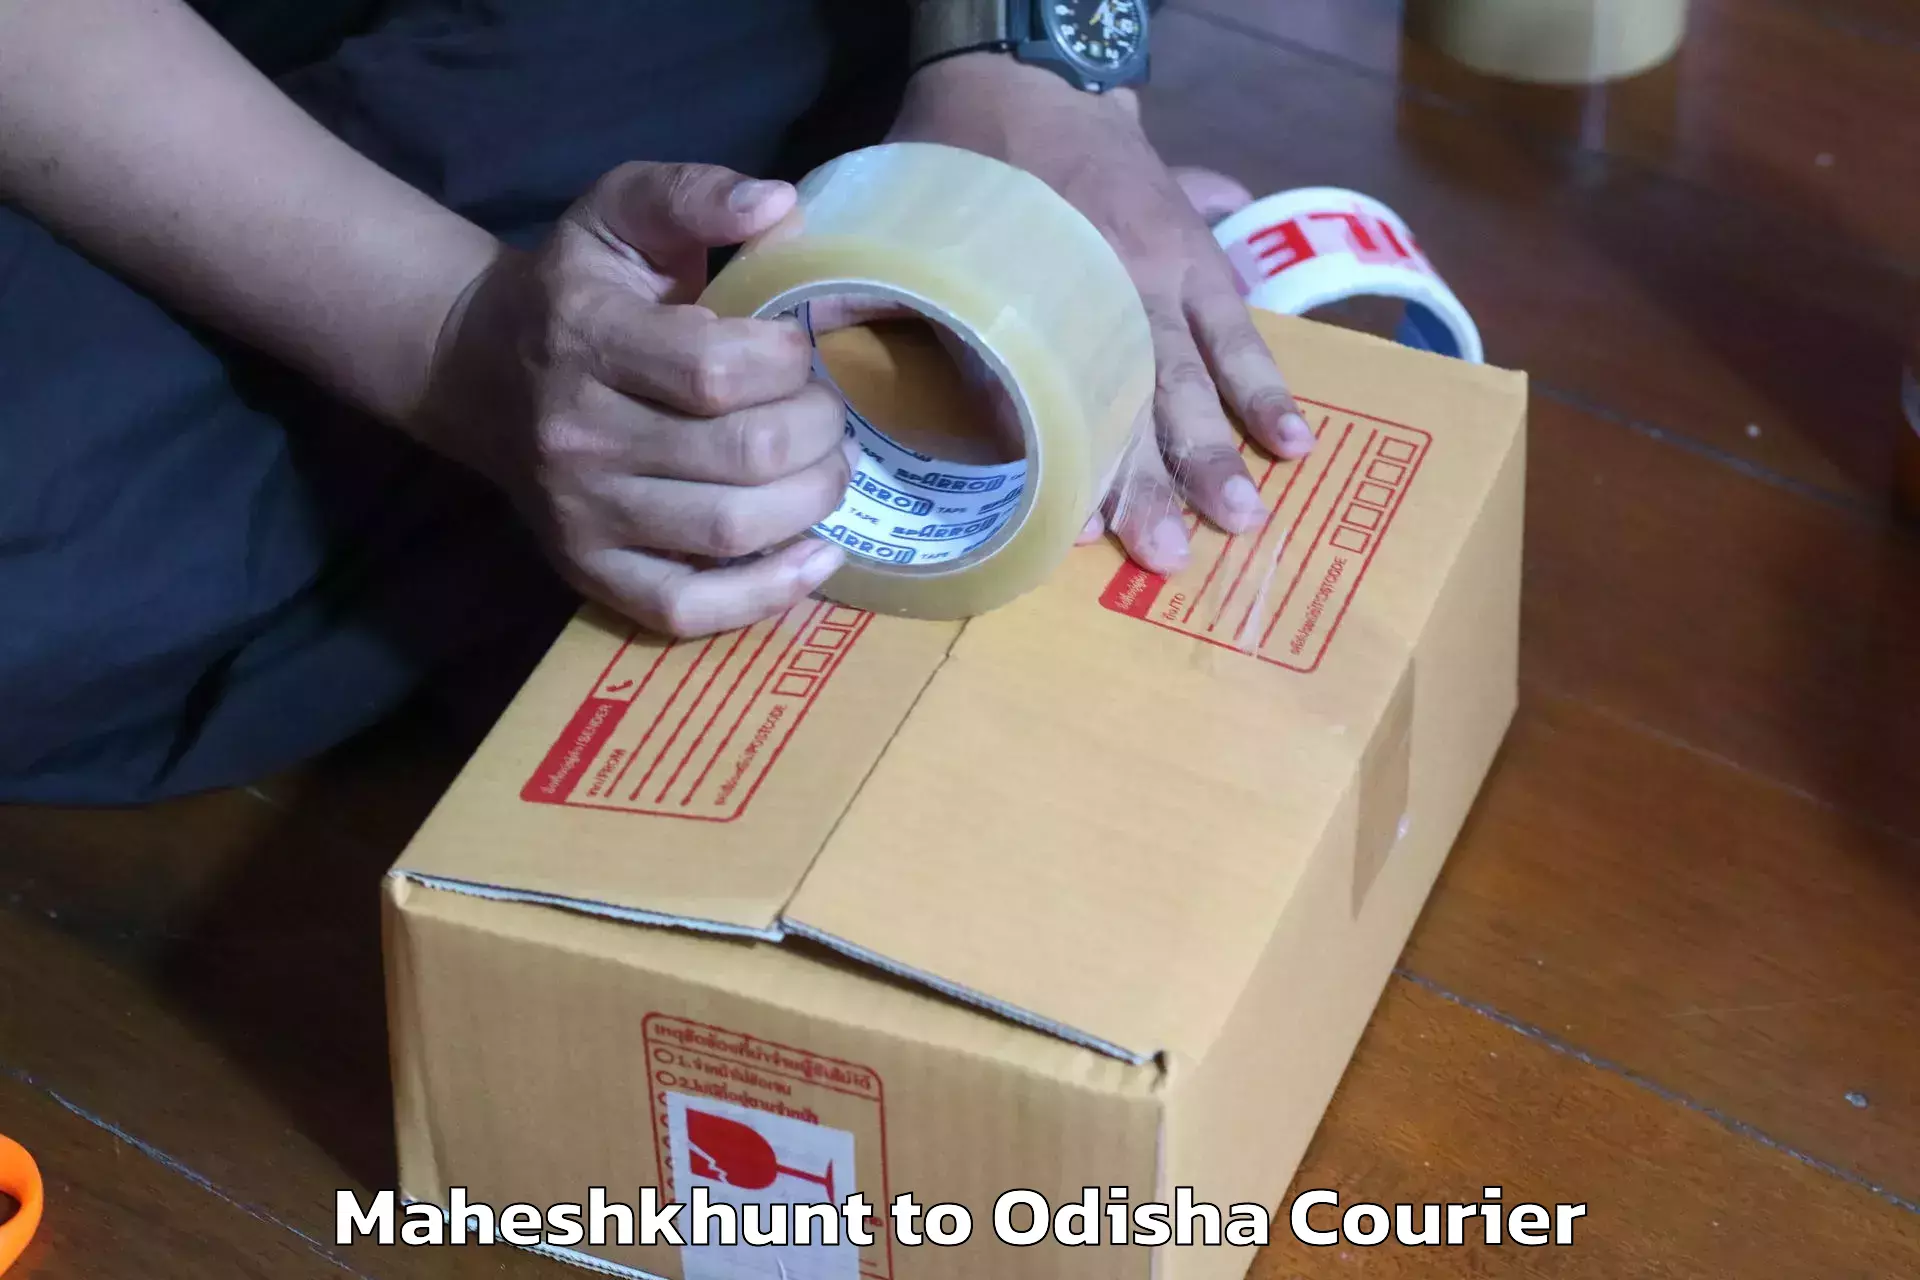 Furniture transport experts Maheshkhunt to Odisha